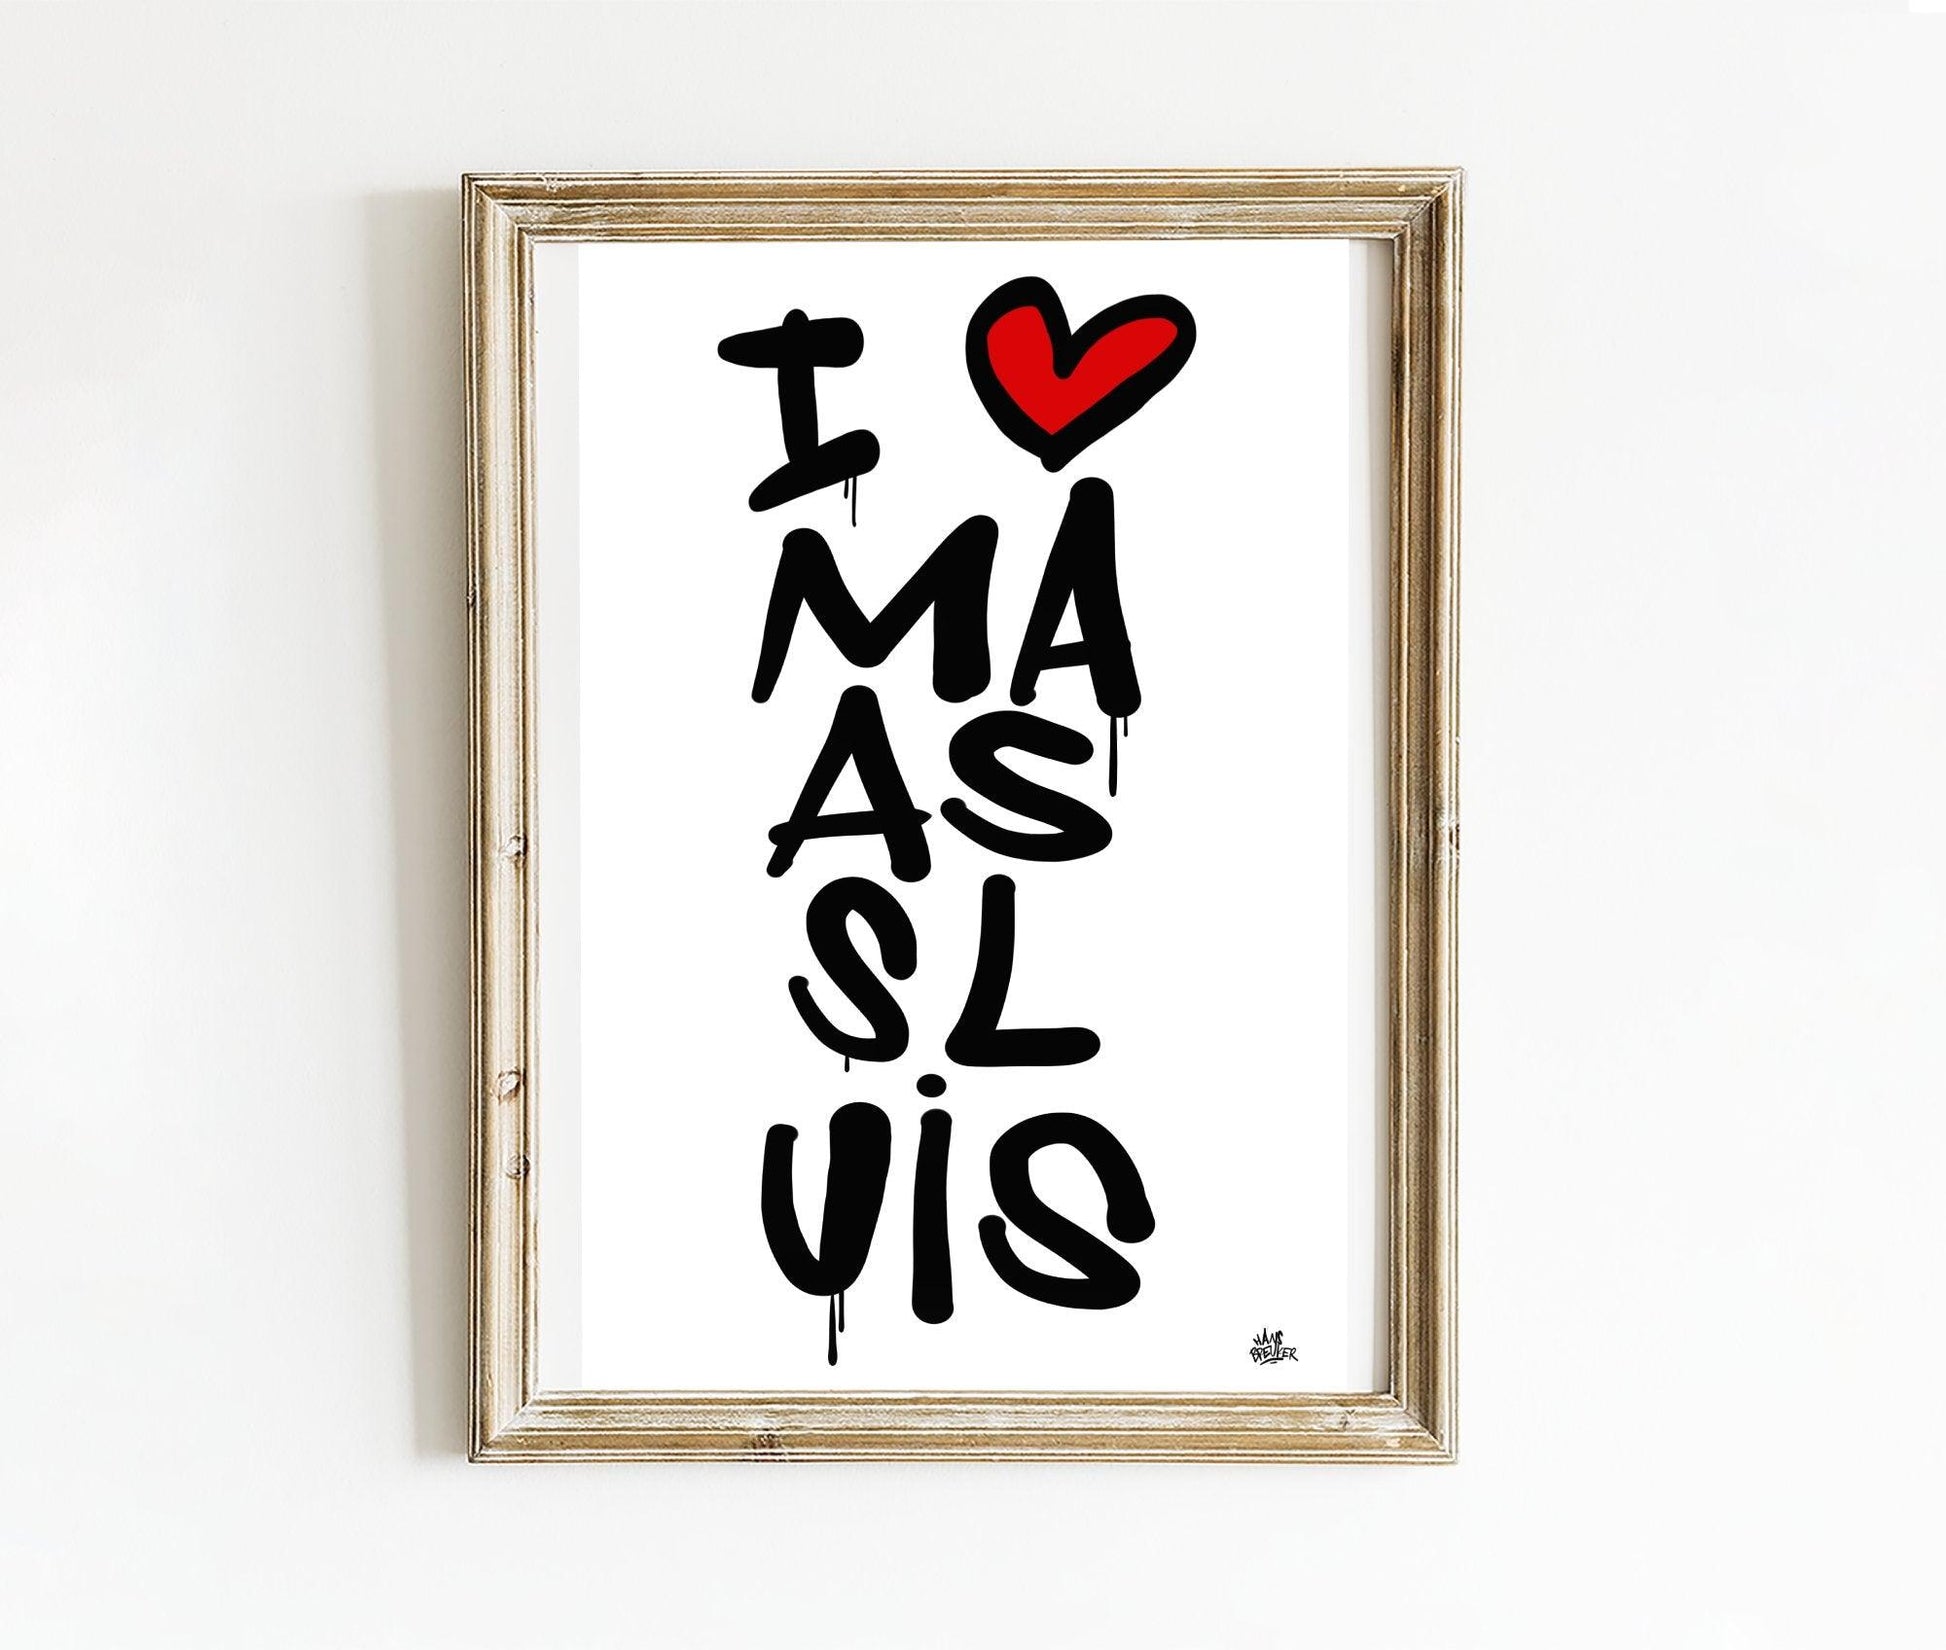 Poster Maassluis - Hans Breuker